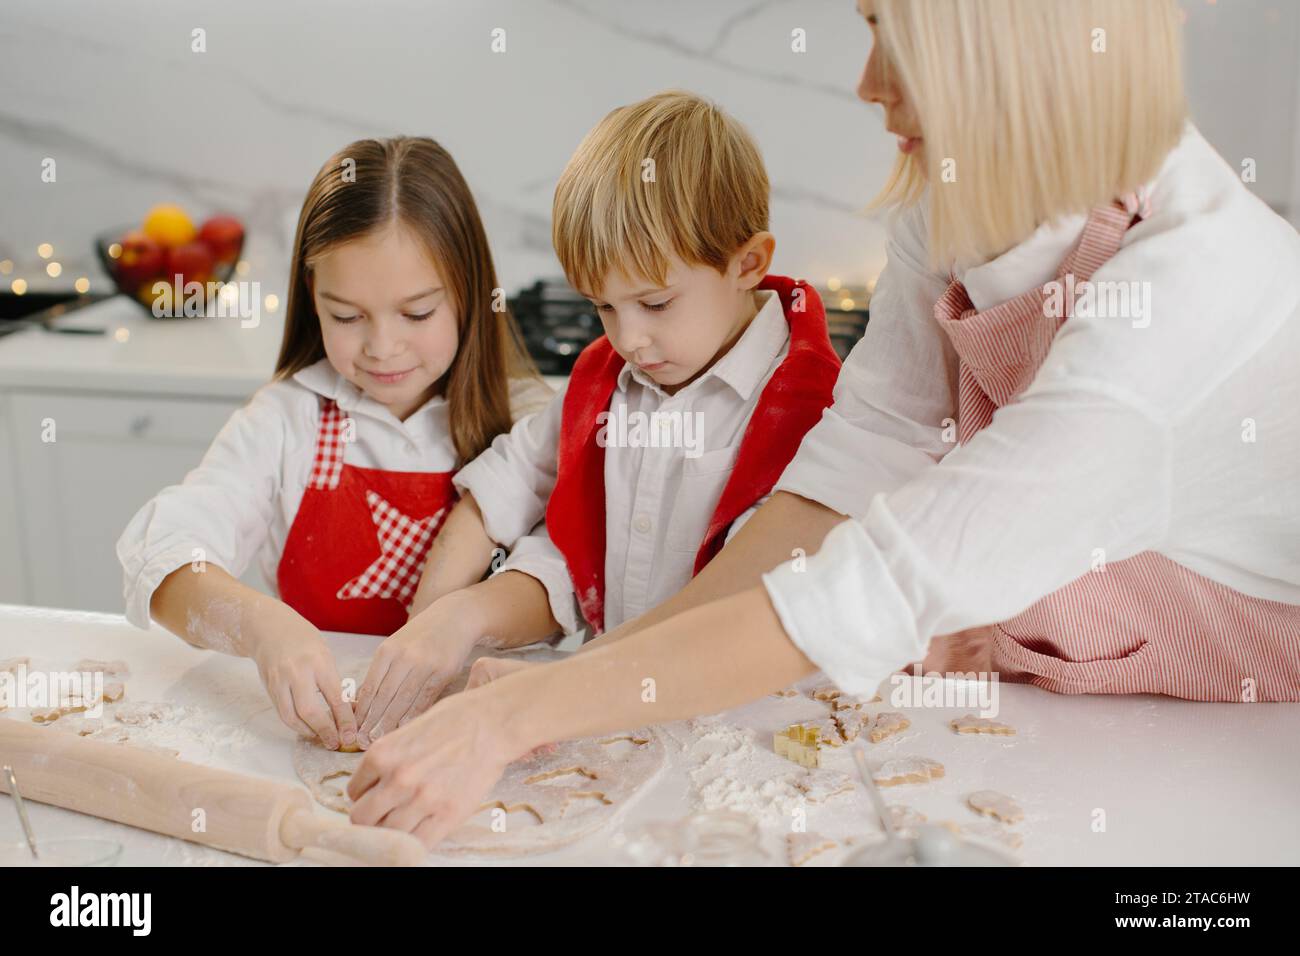 Eine Mutter bringt ihrer Tochter und ihrem kleinen Sohn bei, wie man Kekse macht. Eine Frau und ihre Kinder bereiten Weihnachtskekse mit einer Teigform zu. Stockfoto